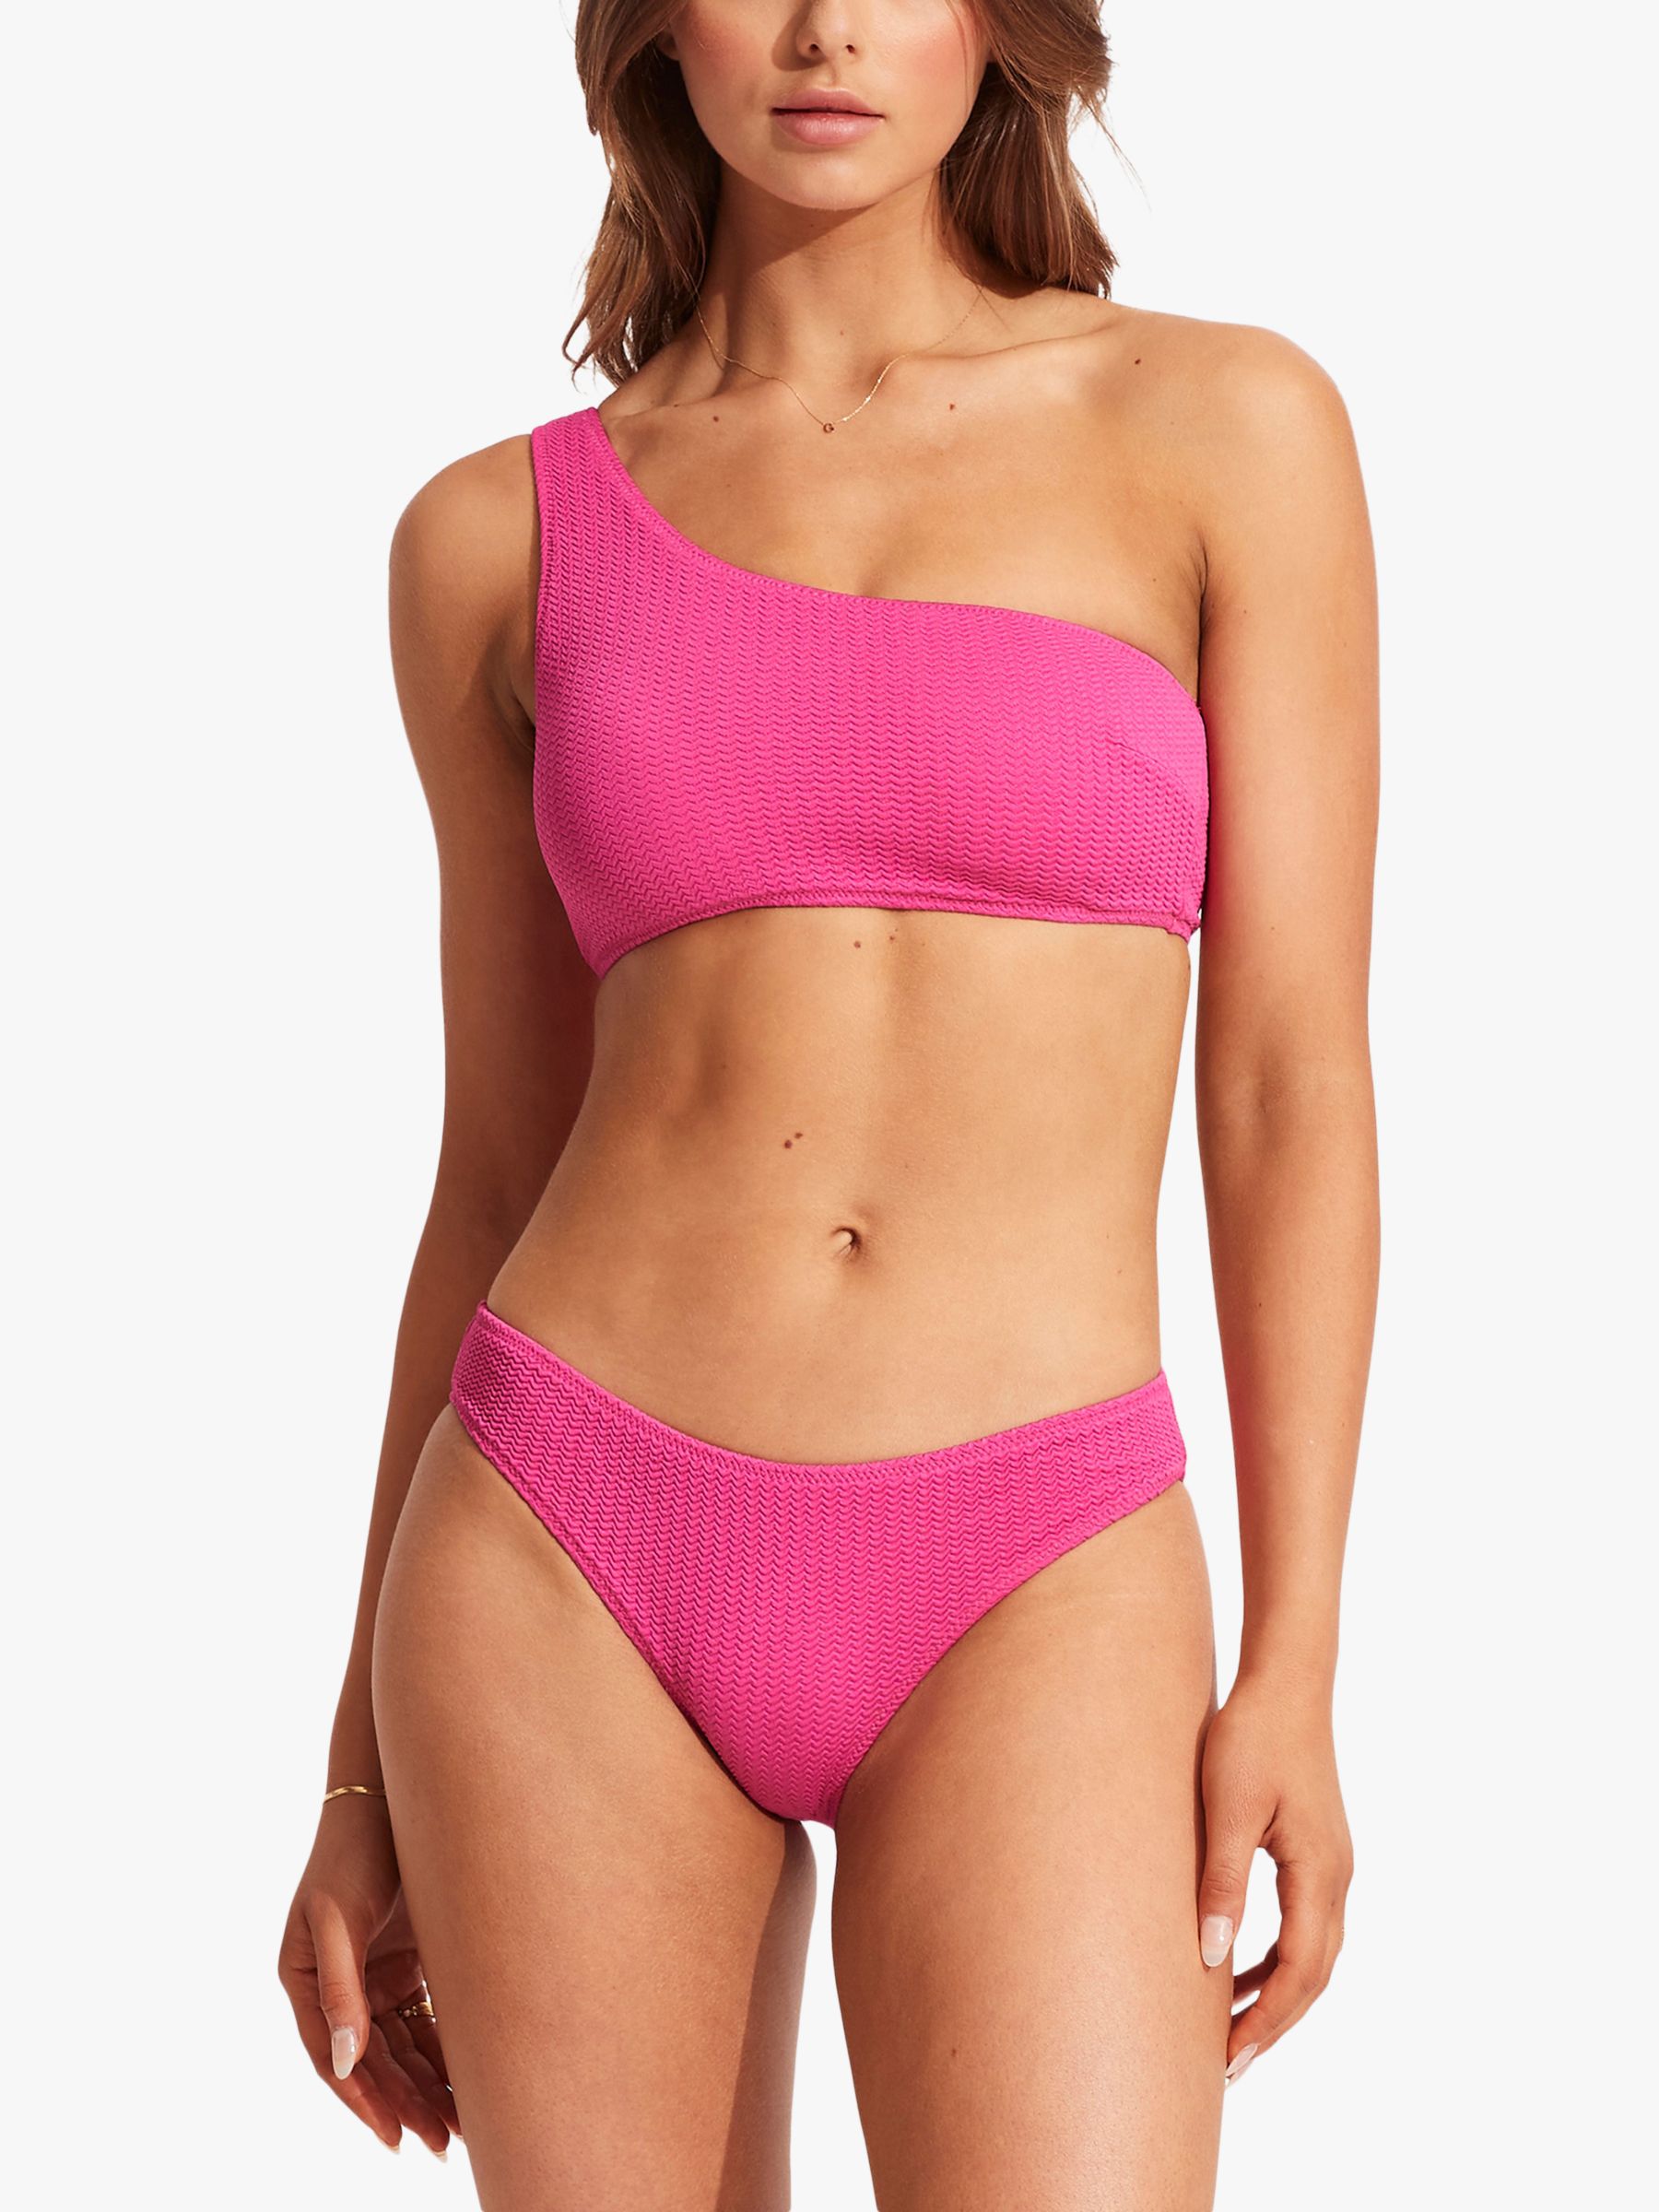 Cove Bikini Bottom  Luxury Women's Sustainable Swimwear – Dos